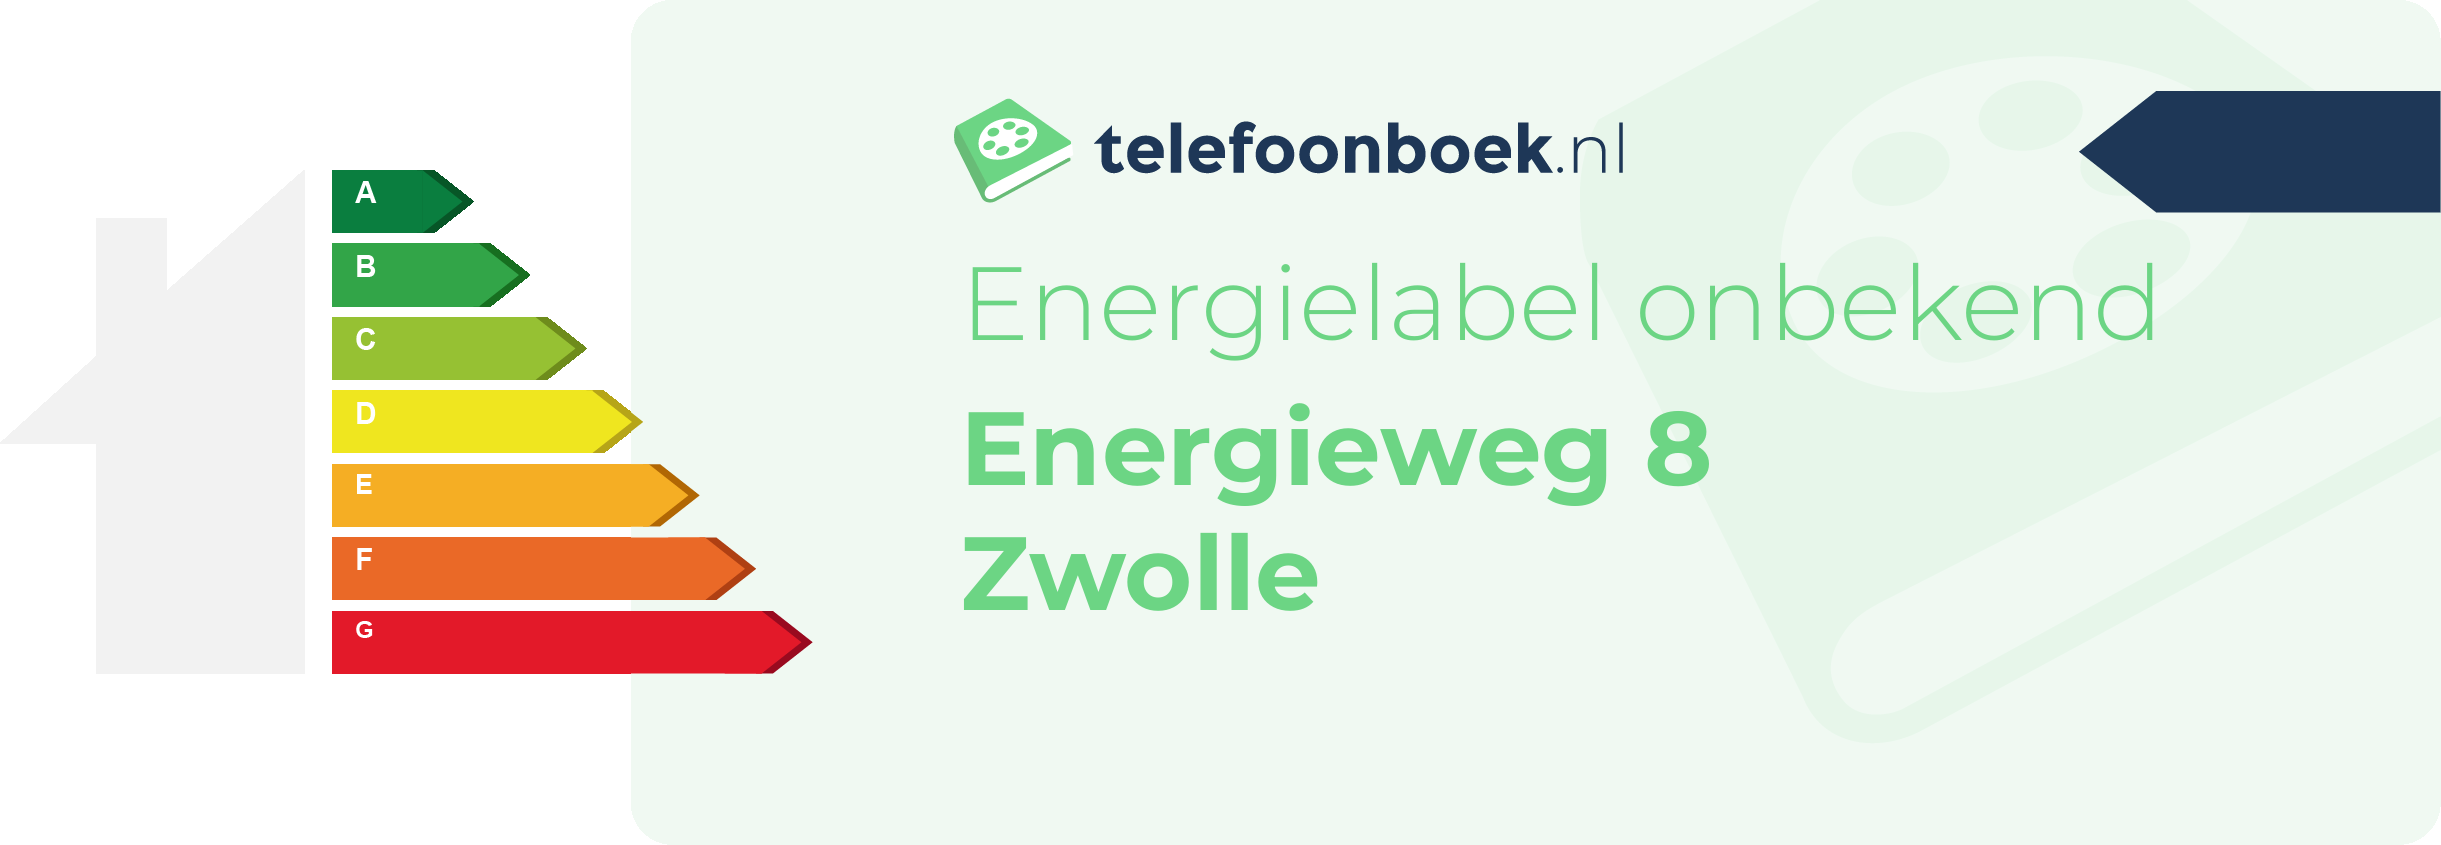 Energielabel Energieweg 8 Zwolle